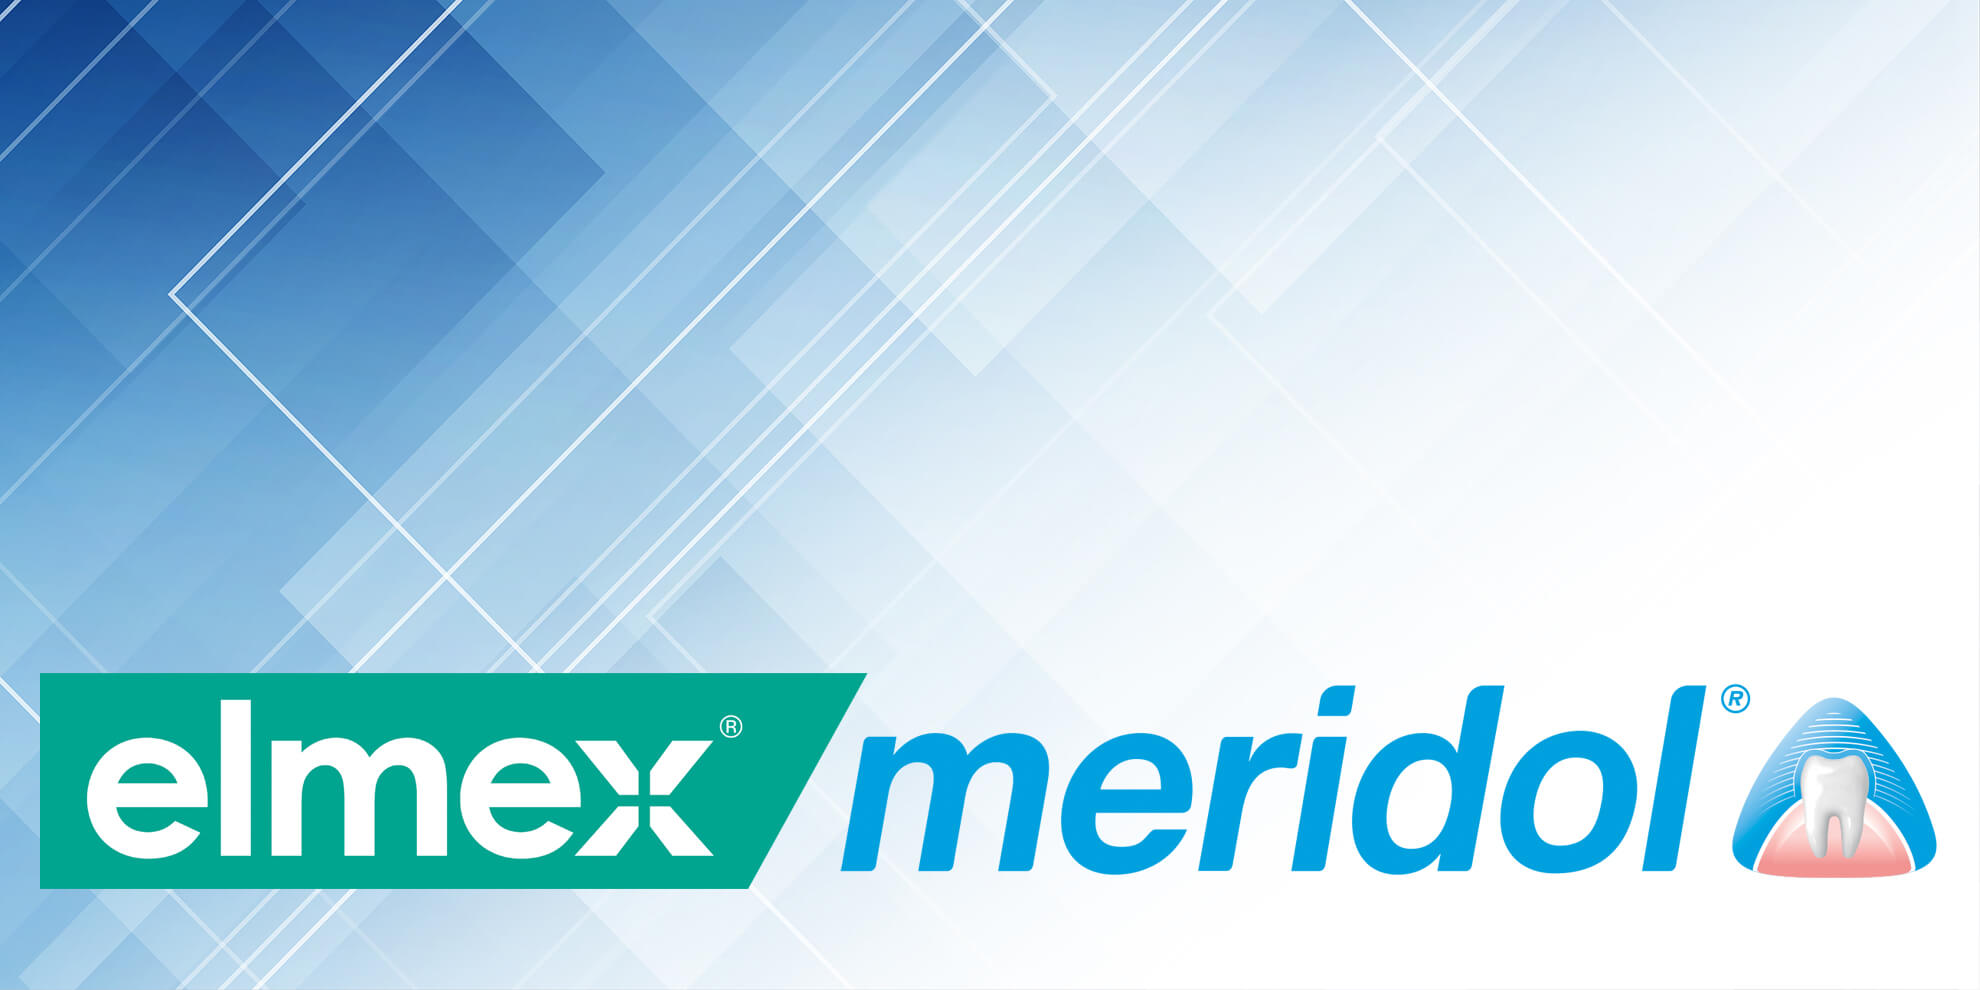 Elmex/Meridol Student Training